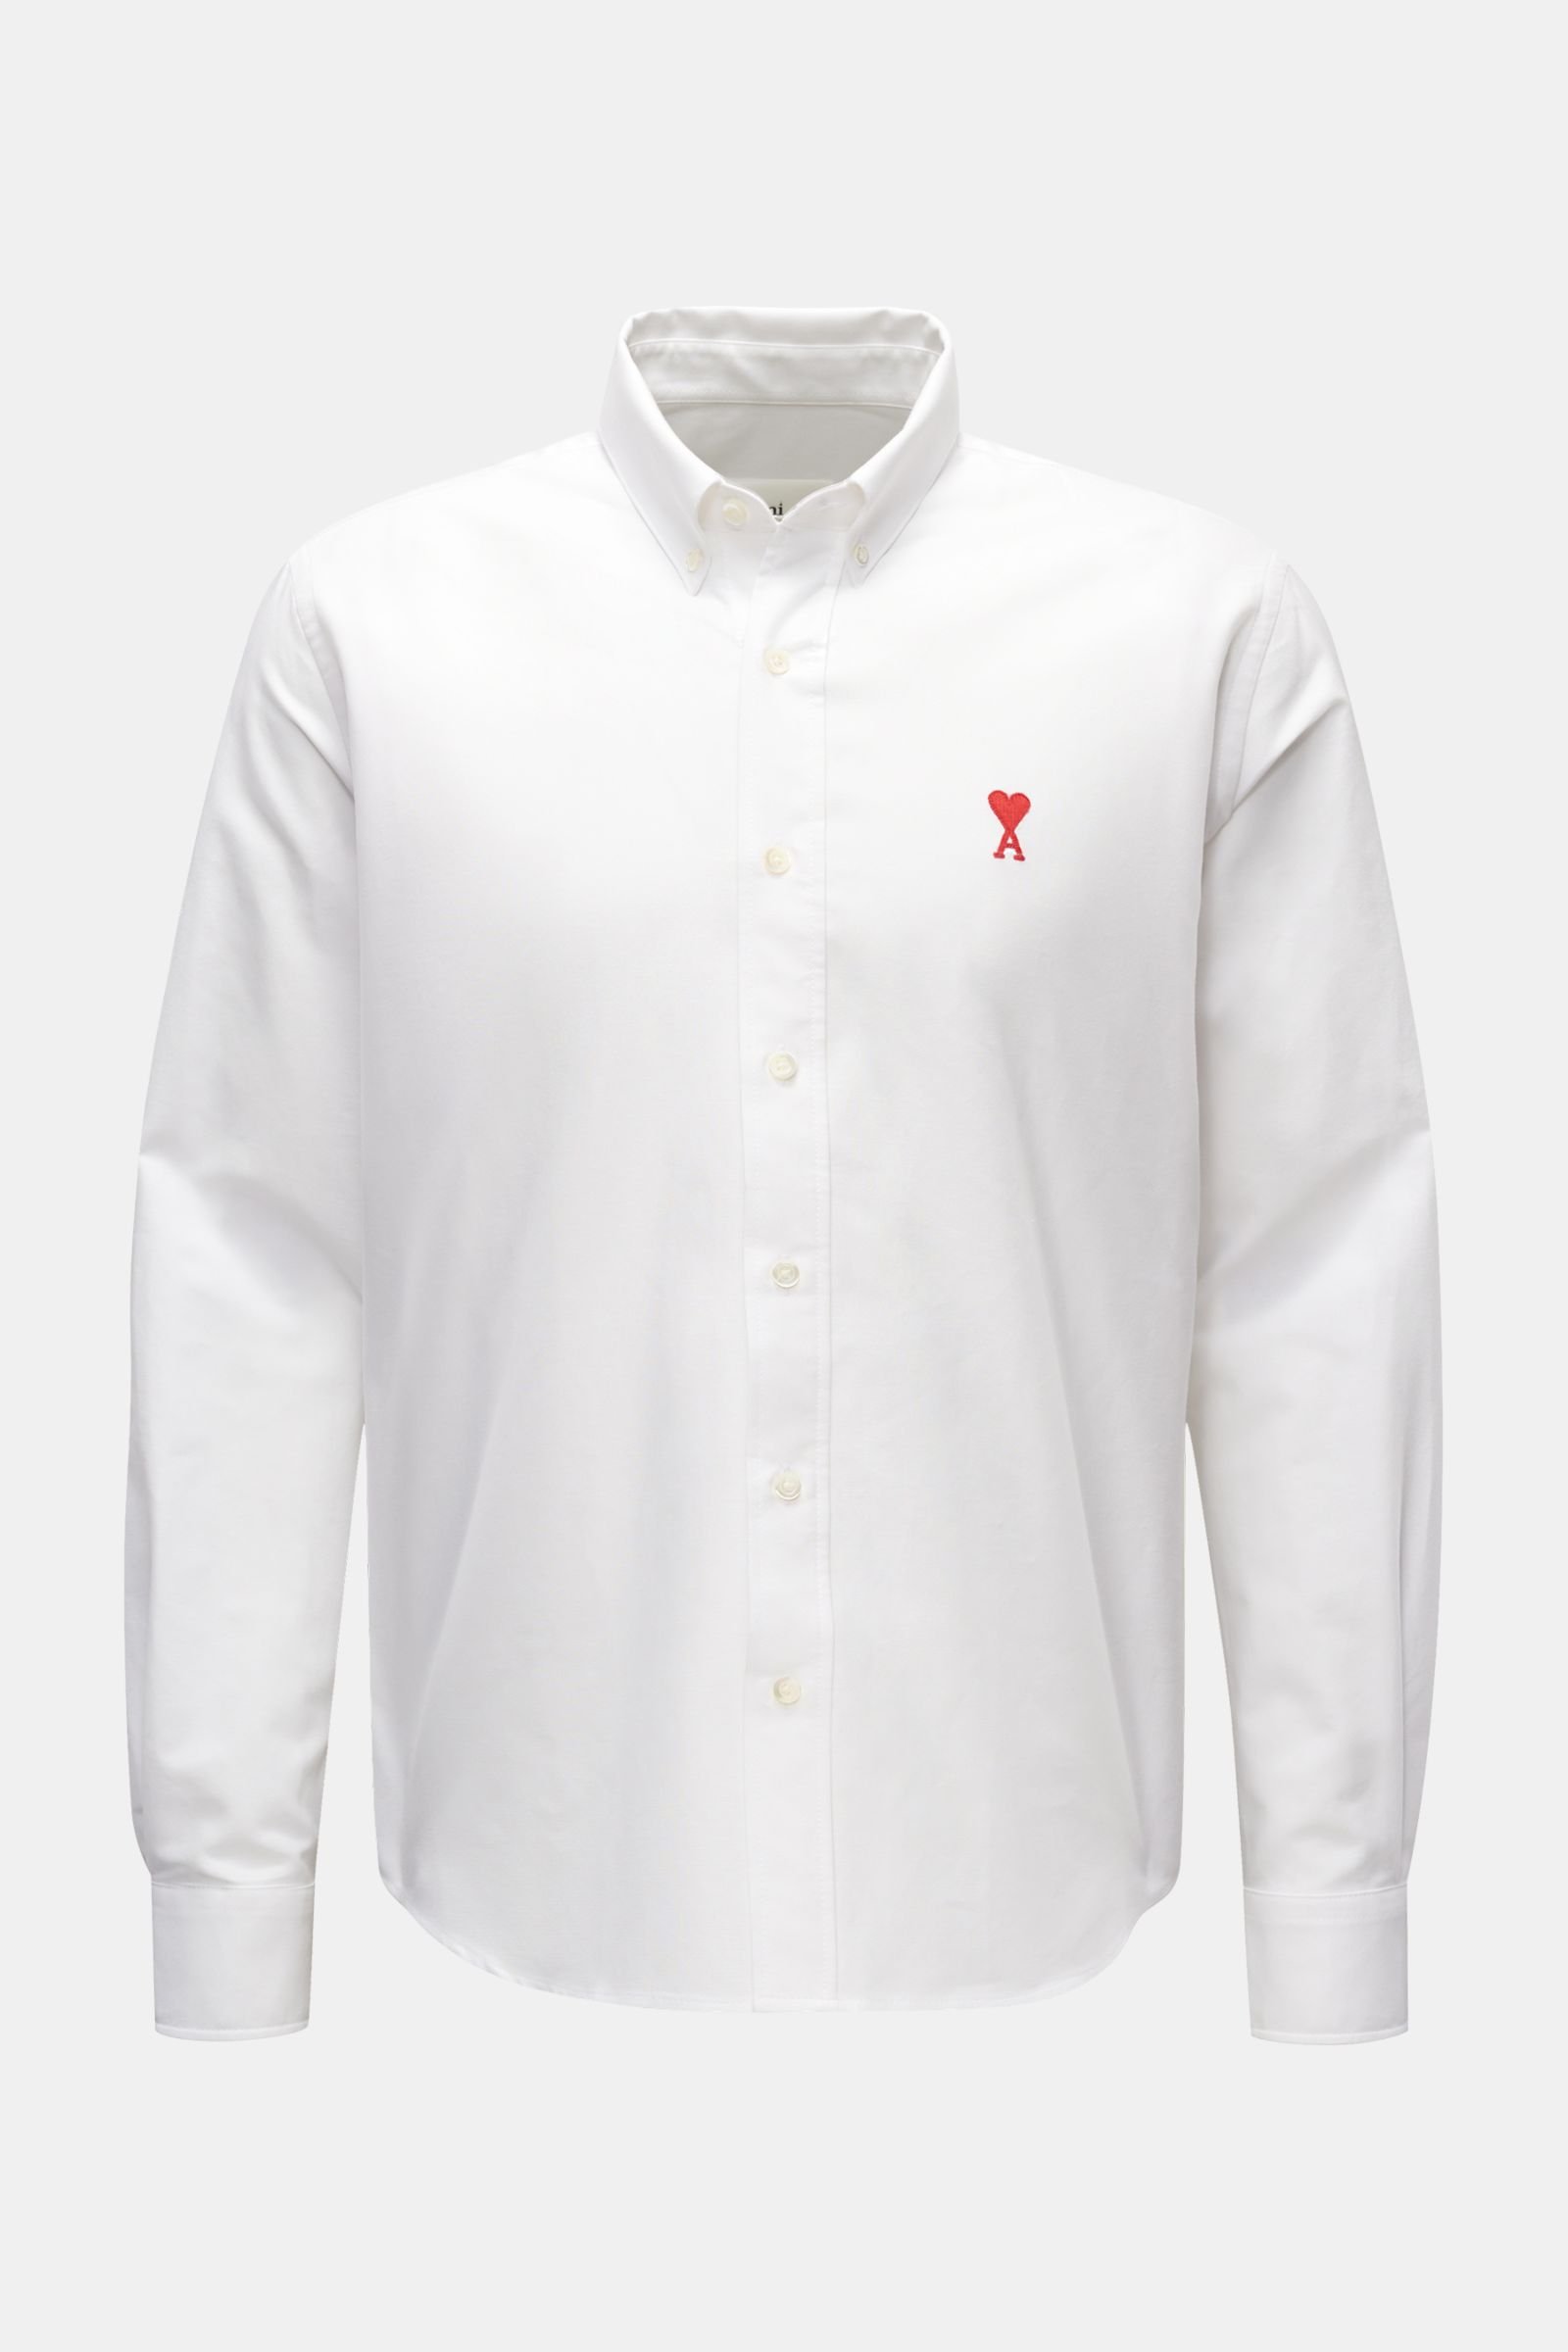 Oxfordhemd Button-Down-Kragen weiß